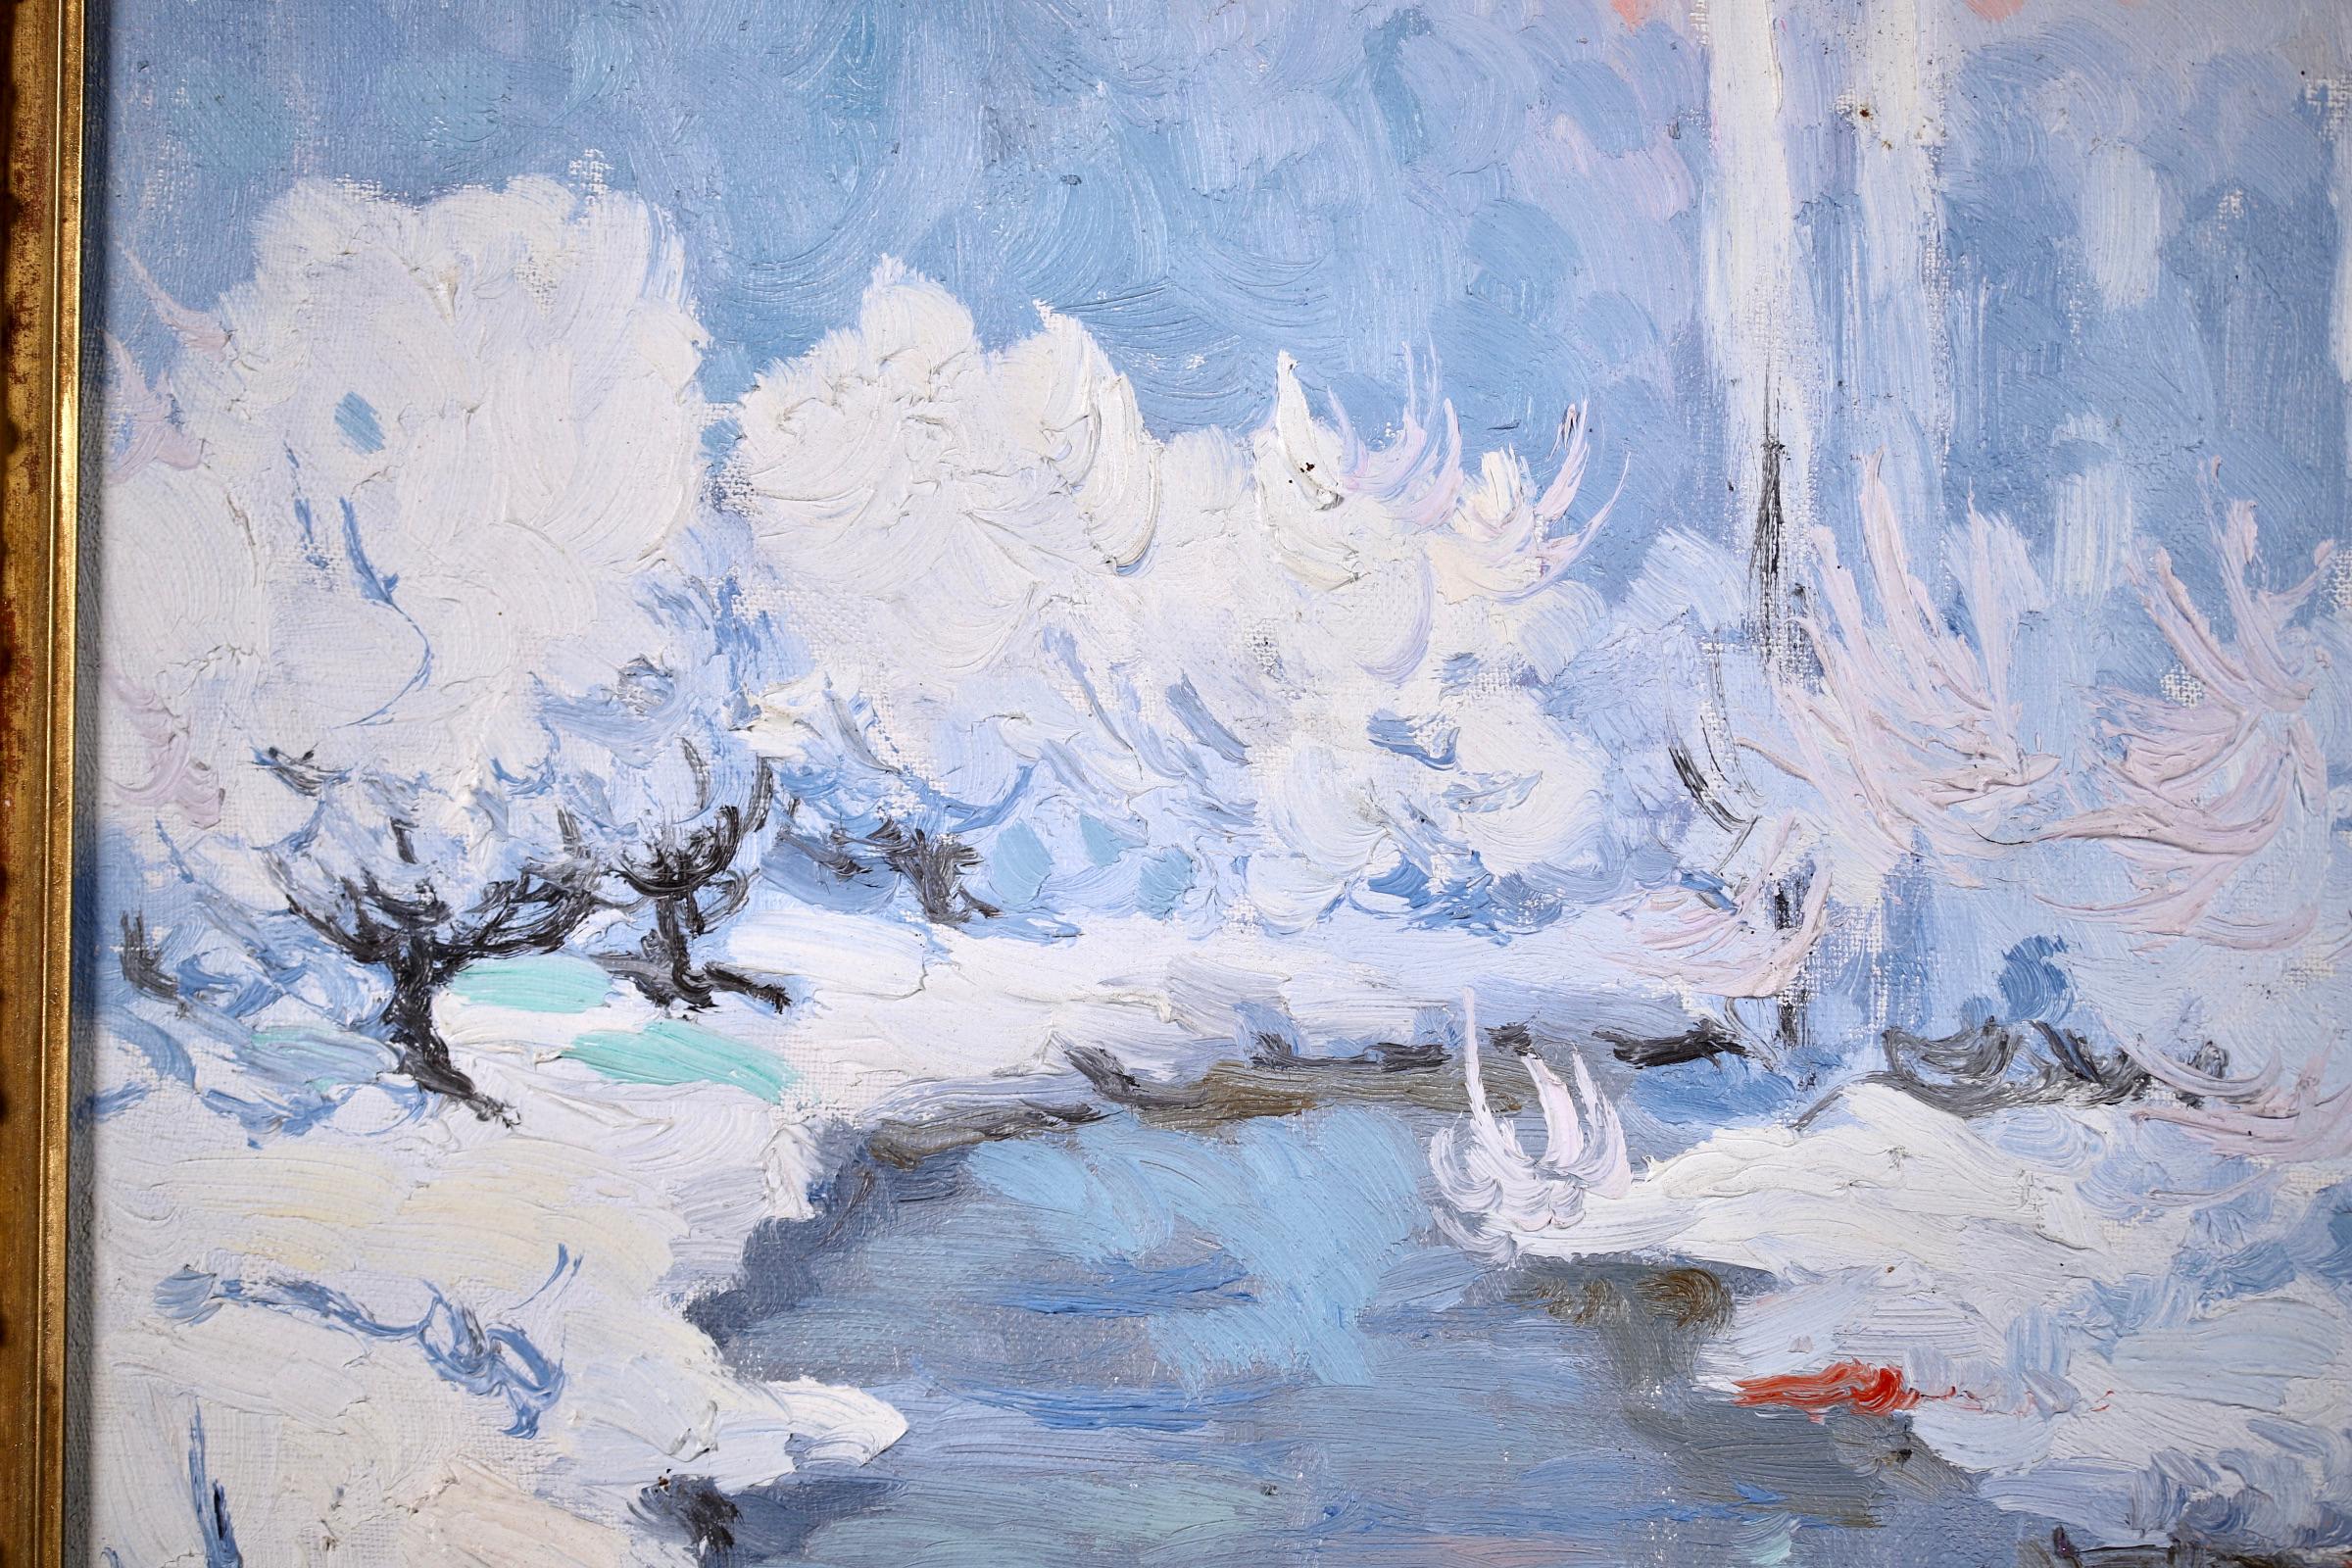 Coucher de Soleil - Hiver - Post Impressionist Oil, Snowy Riverscape by Altmann - Blue Landscape Painting by Alexandre Altmann